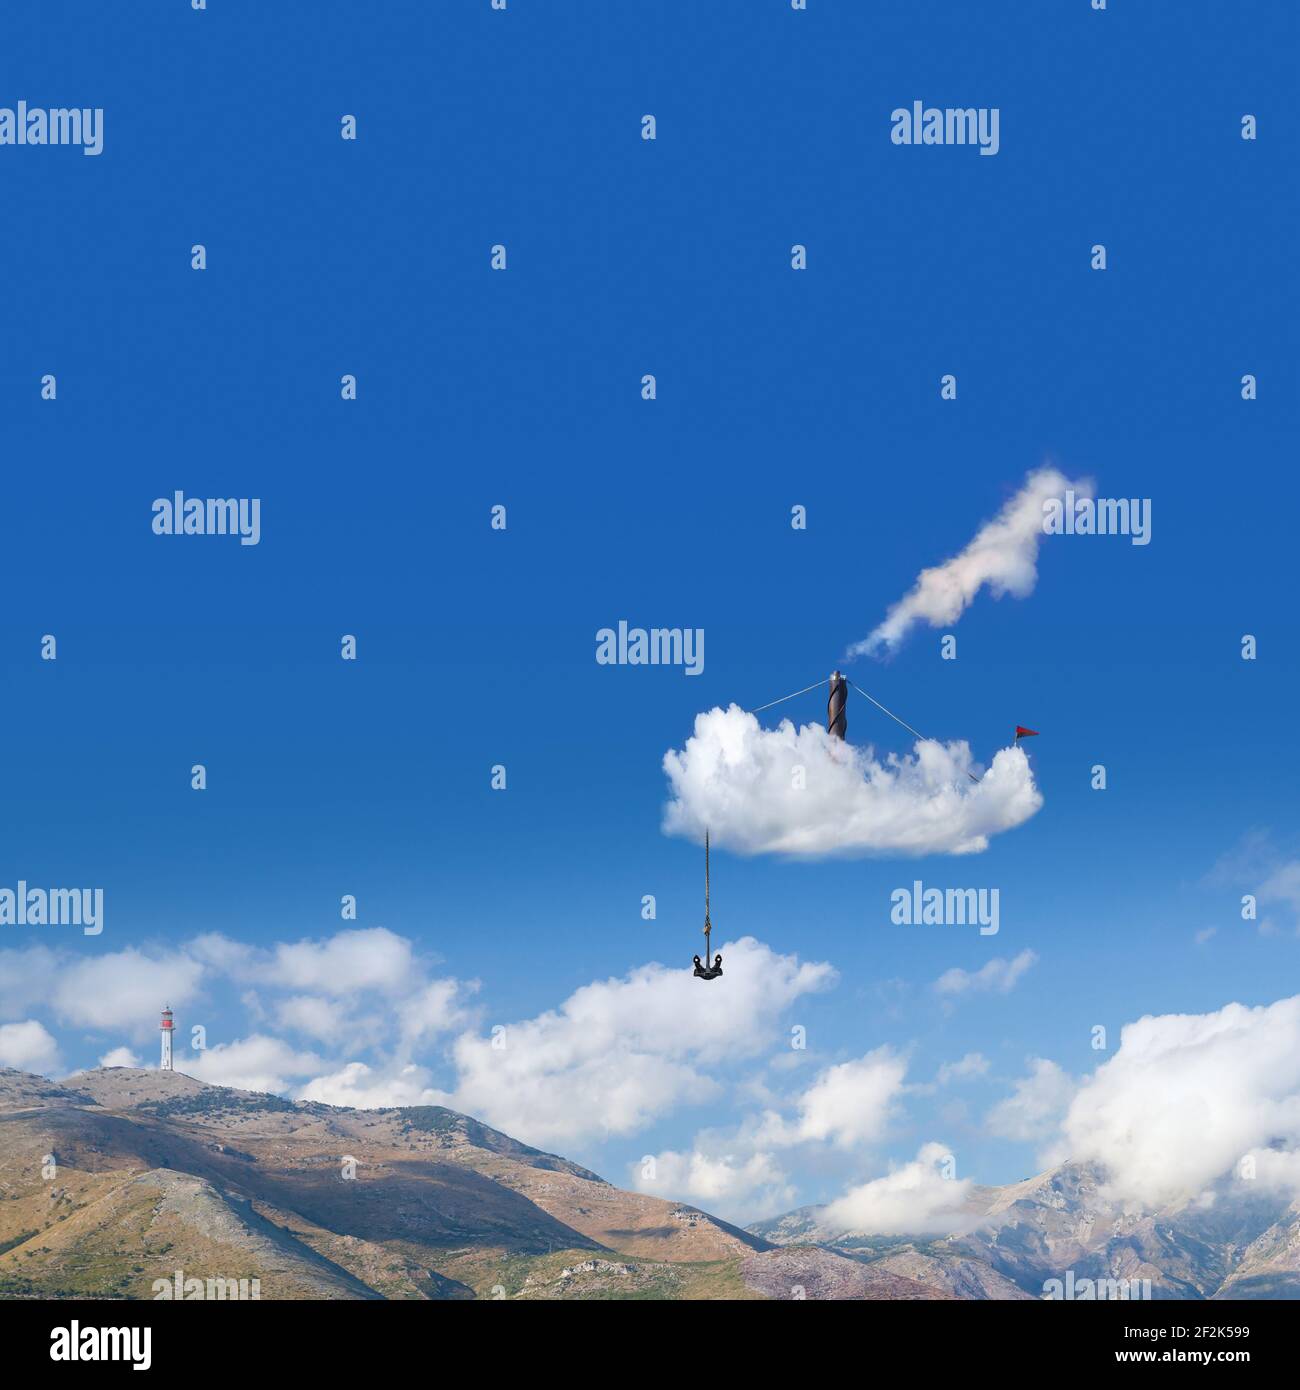 Wolkenschiff mit Anker und rauchenden Kamin ist in blauen Himmel an einem sonnigen Sommertag, Mixed-Media-Fotocollage Stockfoto